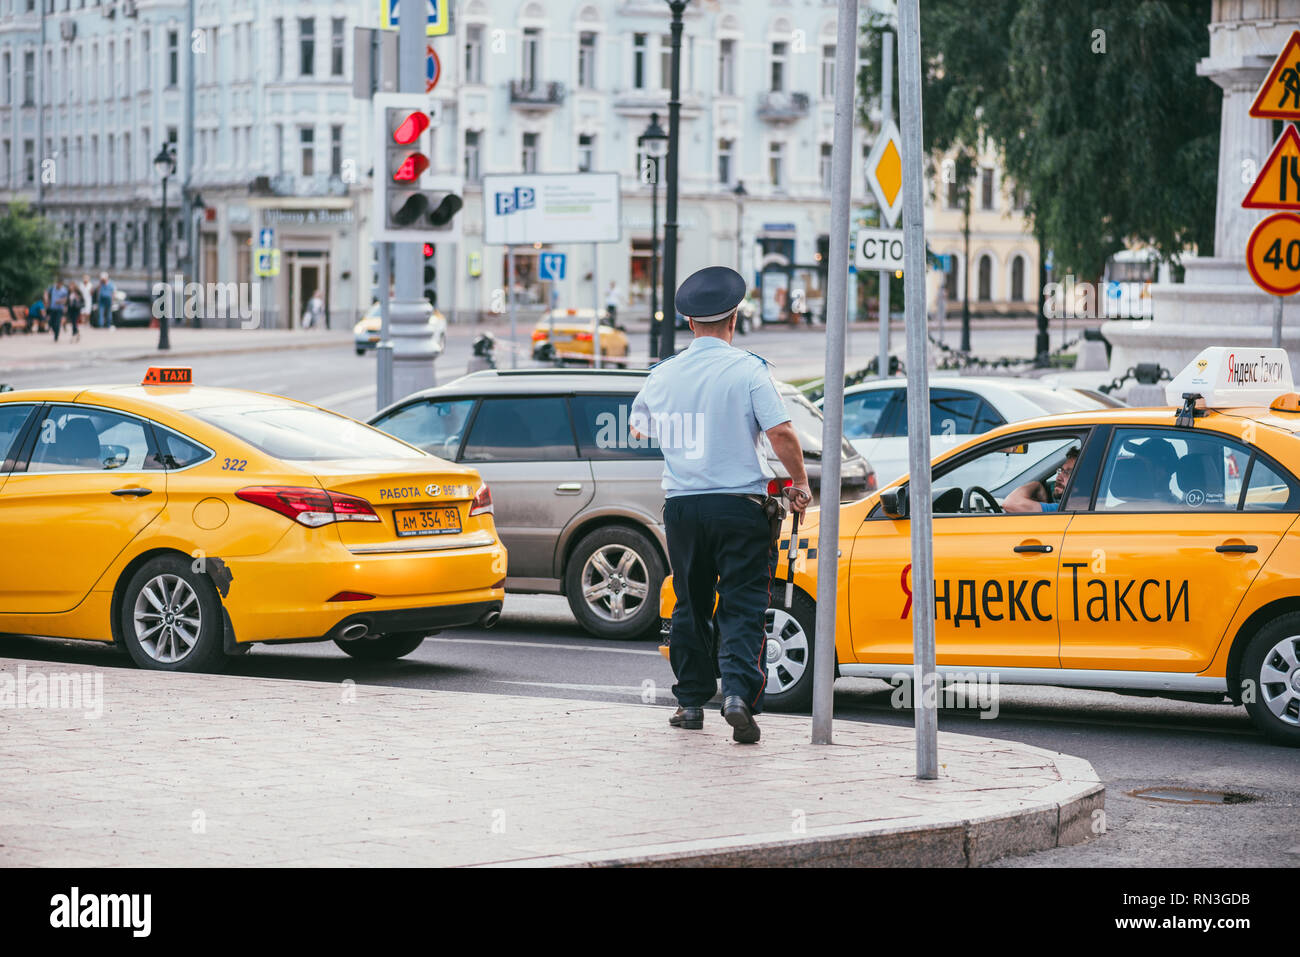 Mosca, Federazione RUSSIN - Luglio 28, 2017: l'ispettore poliziotto arrestato Yandex taxi driver, a Mosca in Russia durante la stagione estiva - Immagine Foto Stock